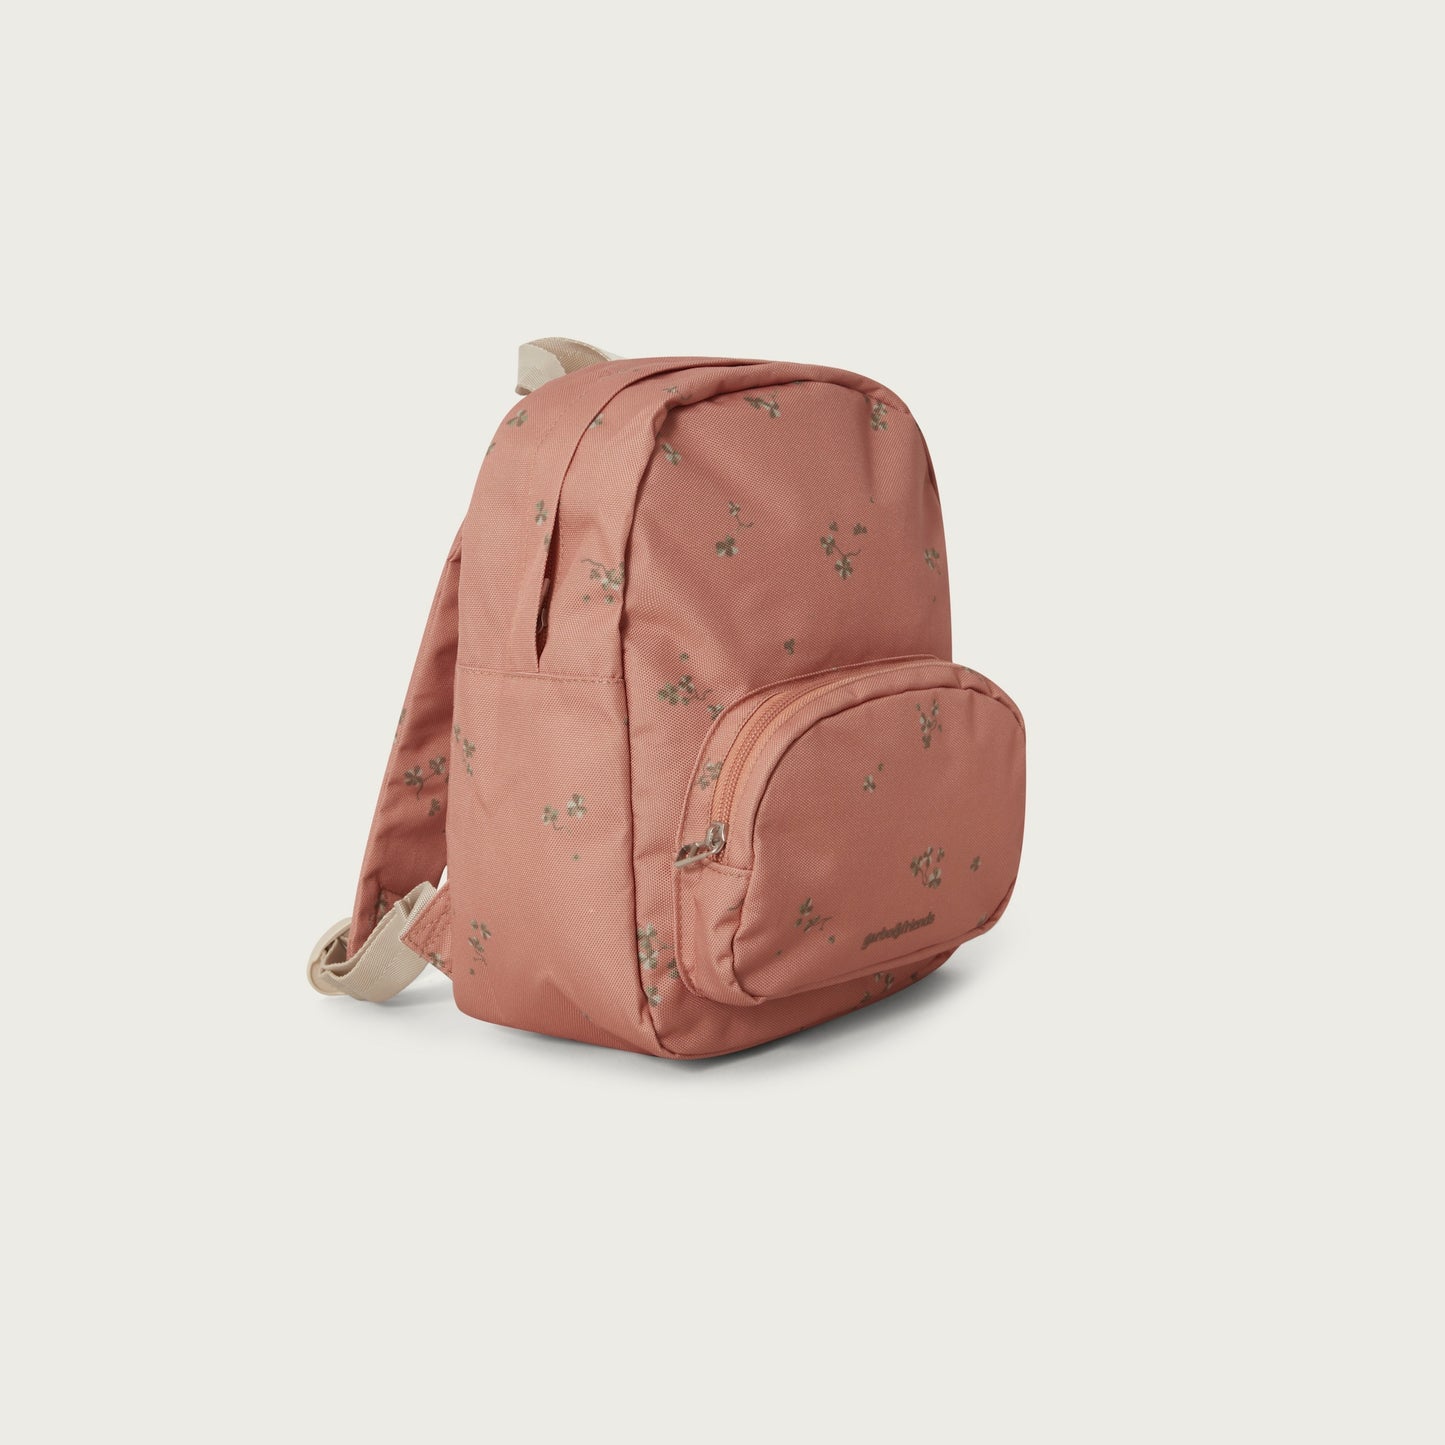 Backpack - Sorrel Chestnut